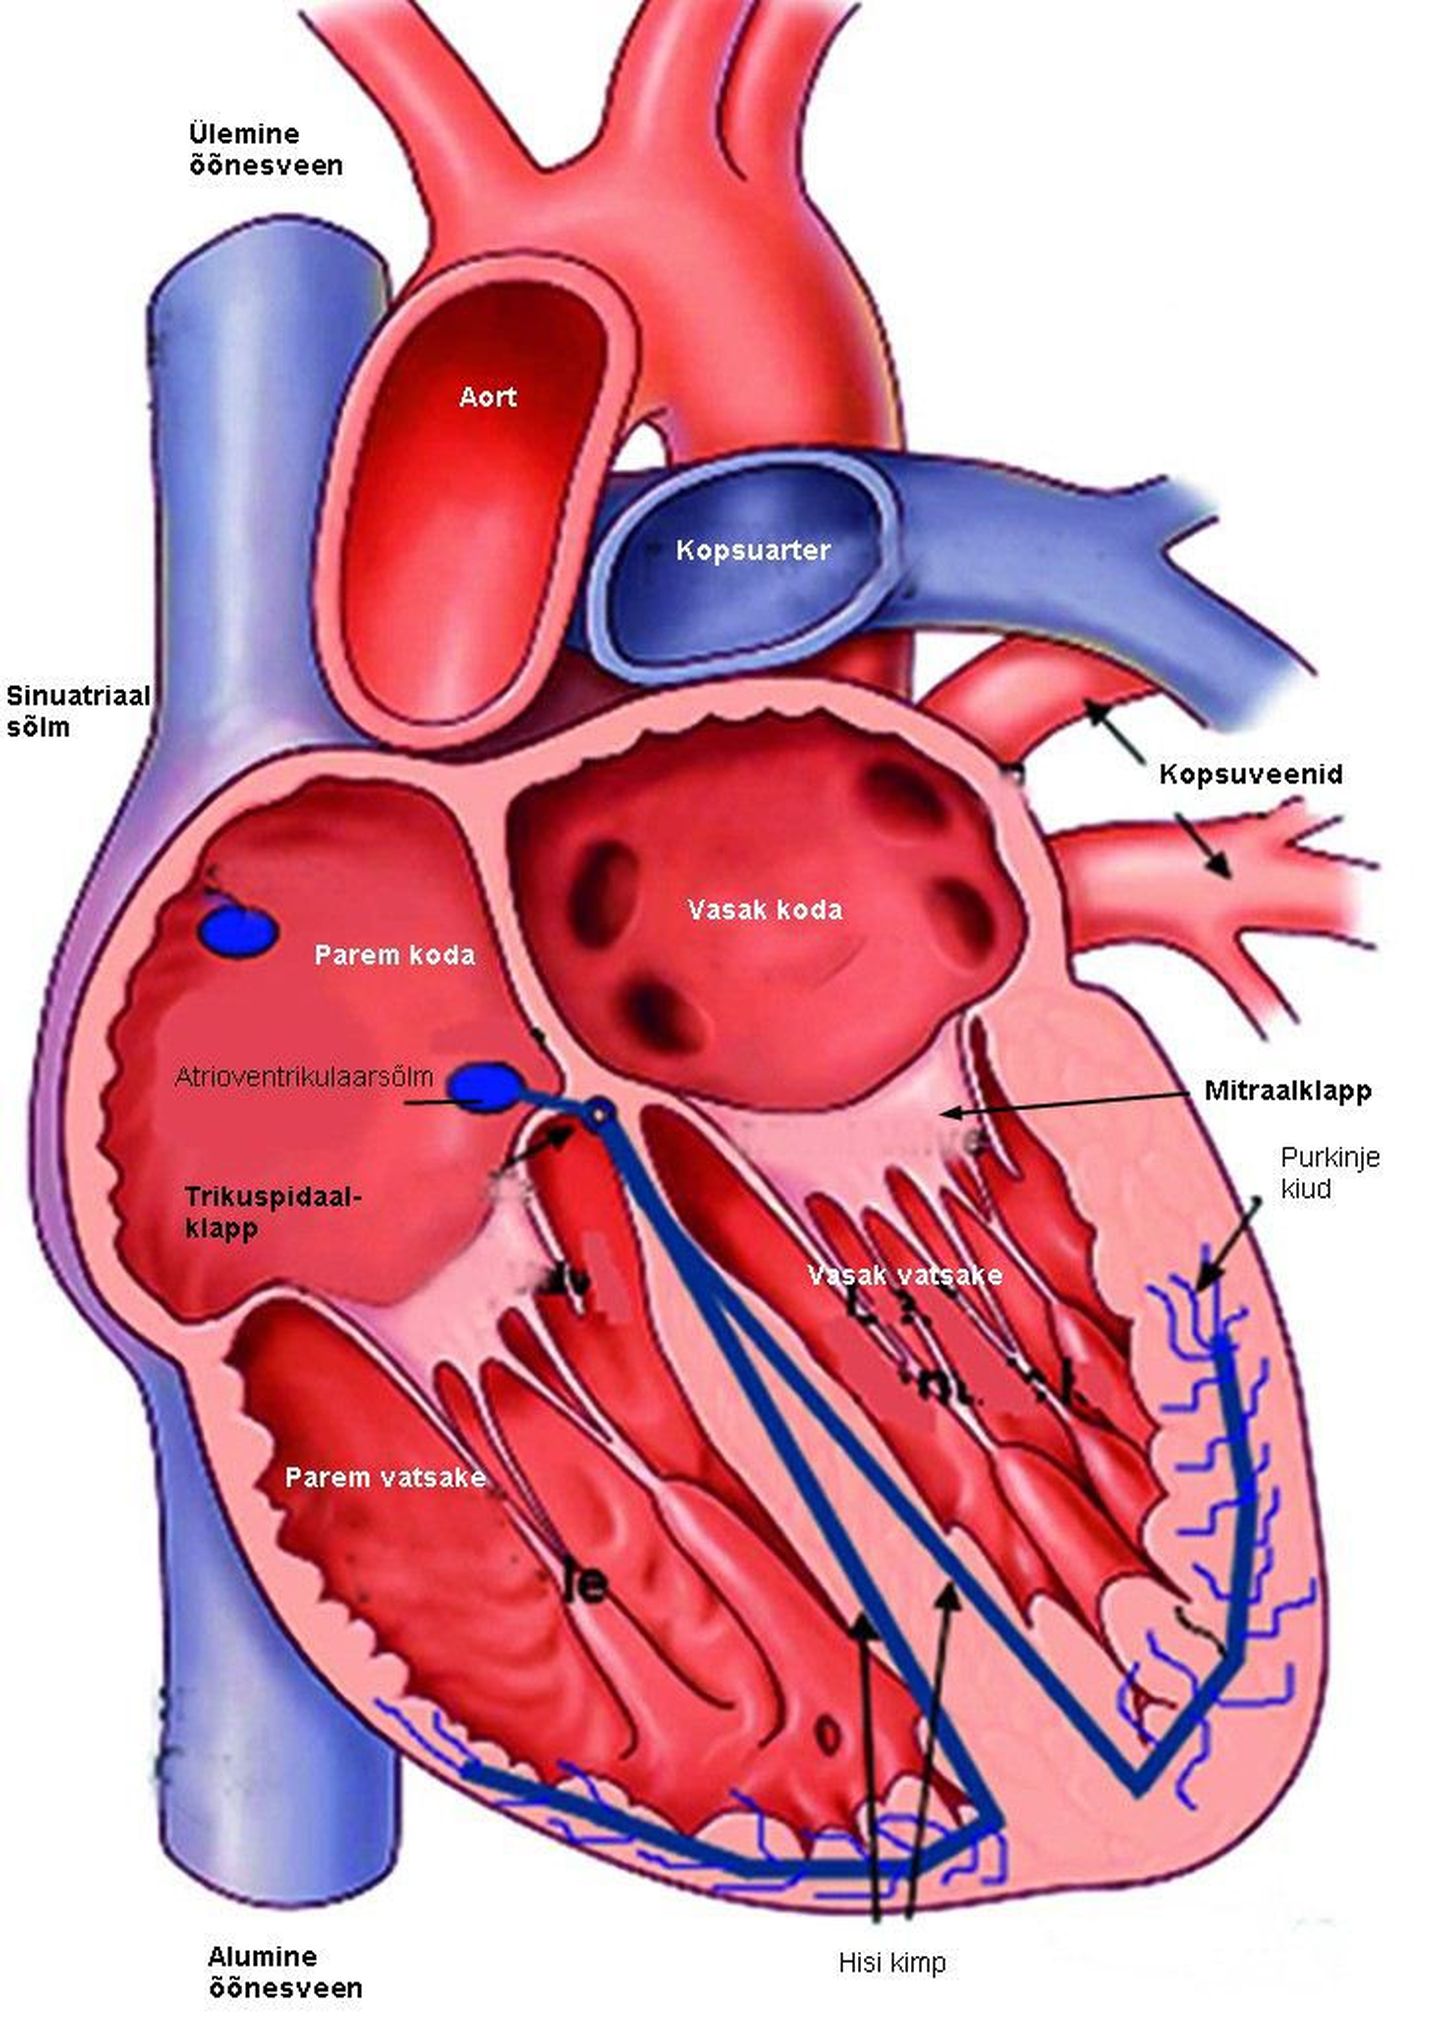 Sakala keskuses on tasuta loeng südame-veresoonkonna haigustest